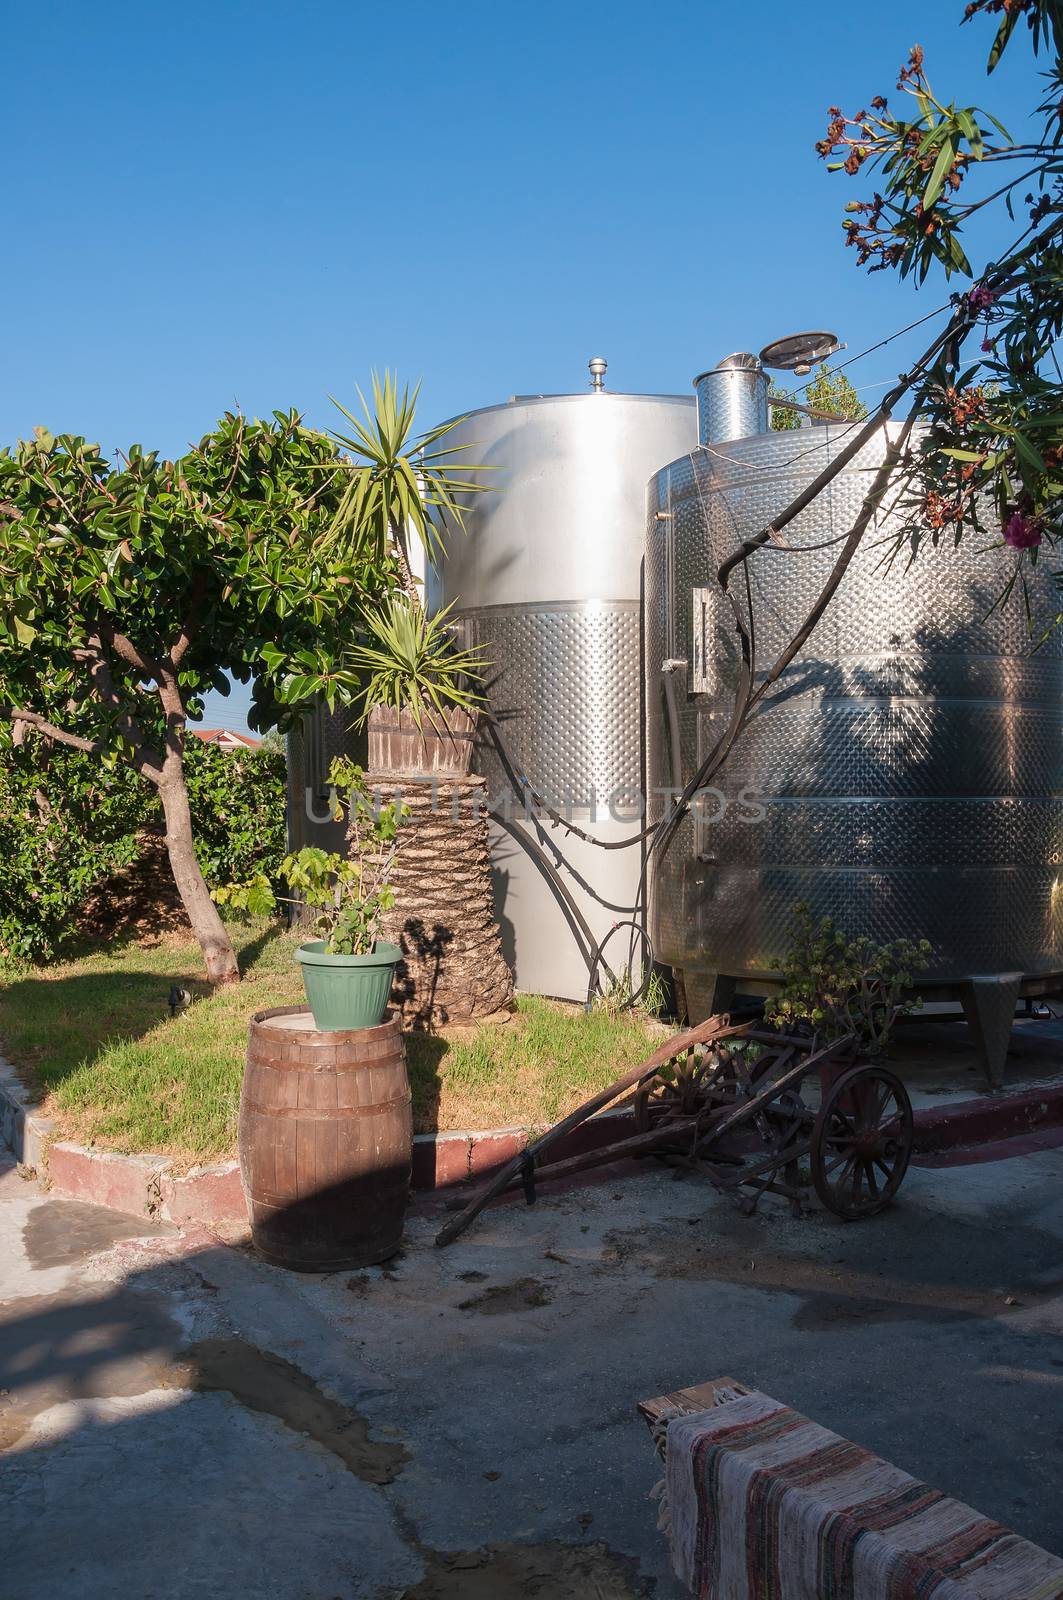 Steel silos for wine in a greek winery garden